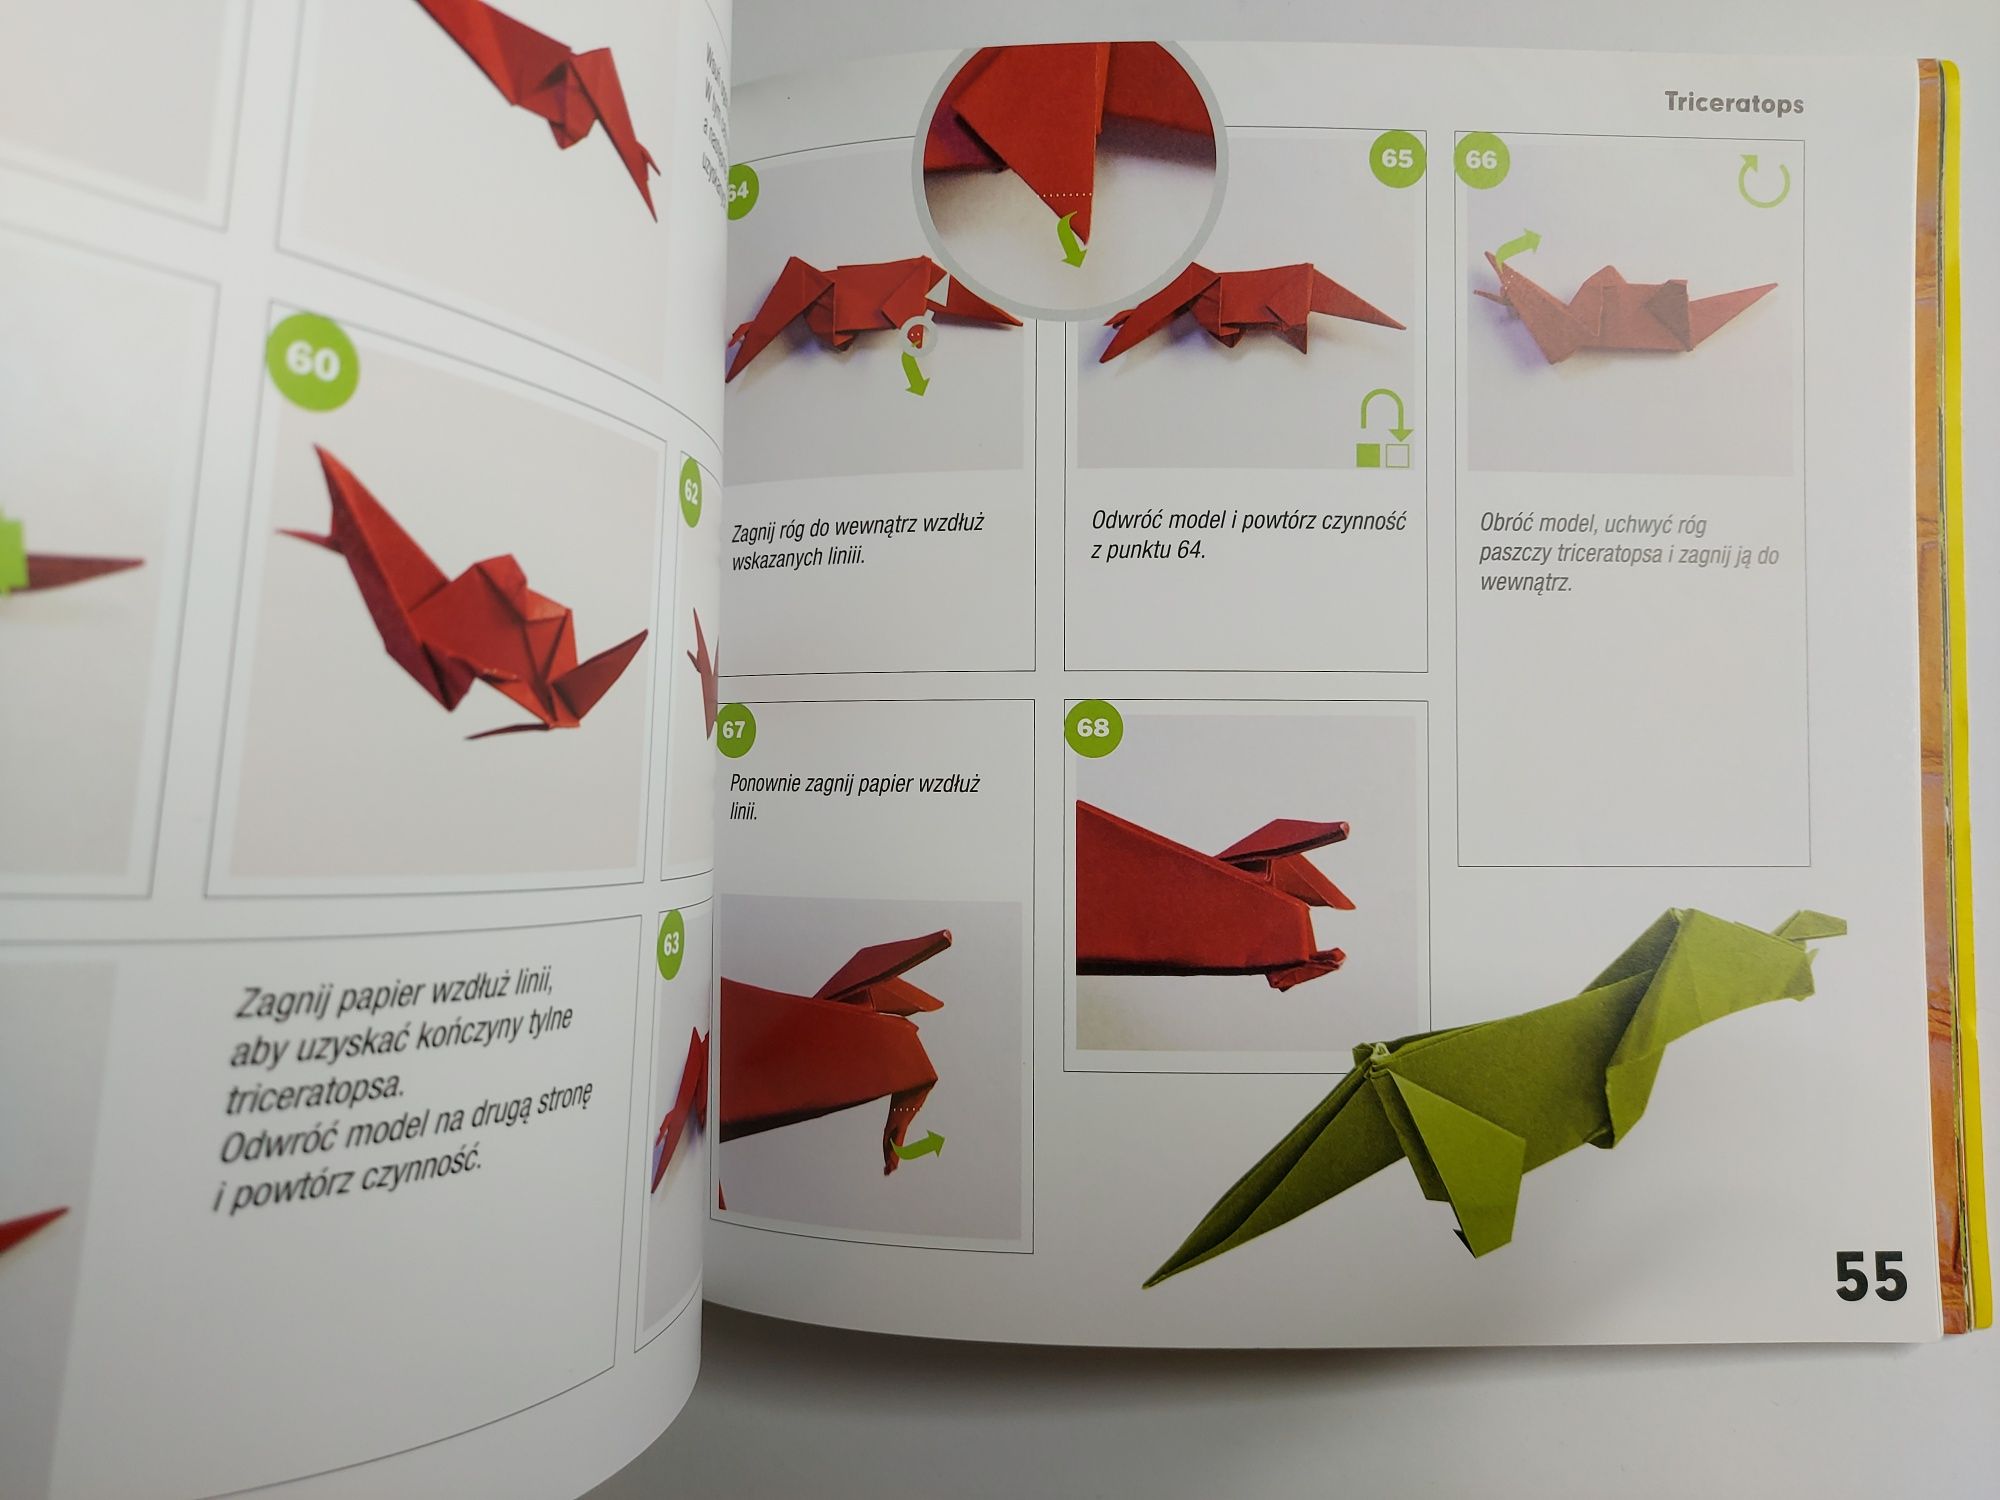 Dino Origami czyli prehistoryczny świat z papieru